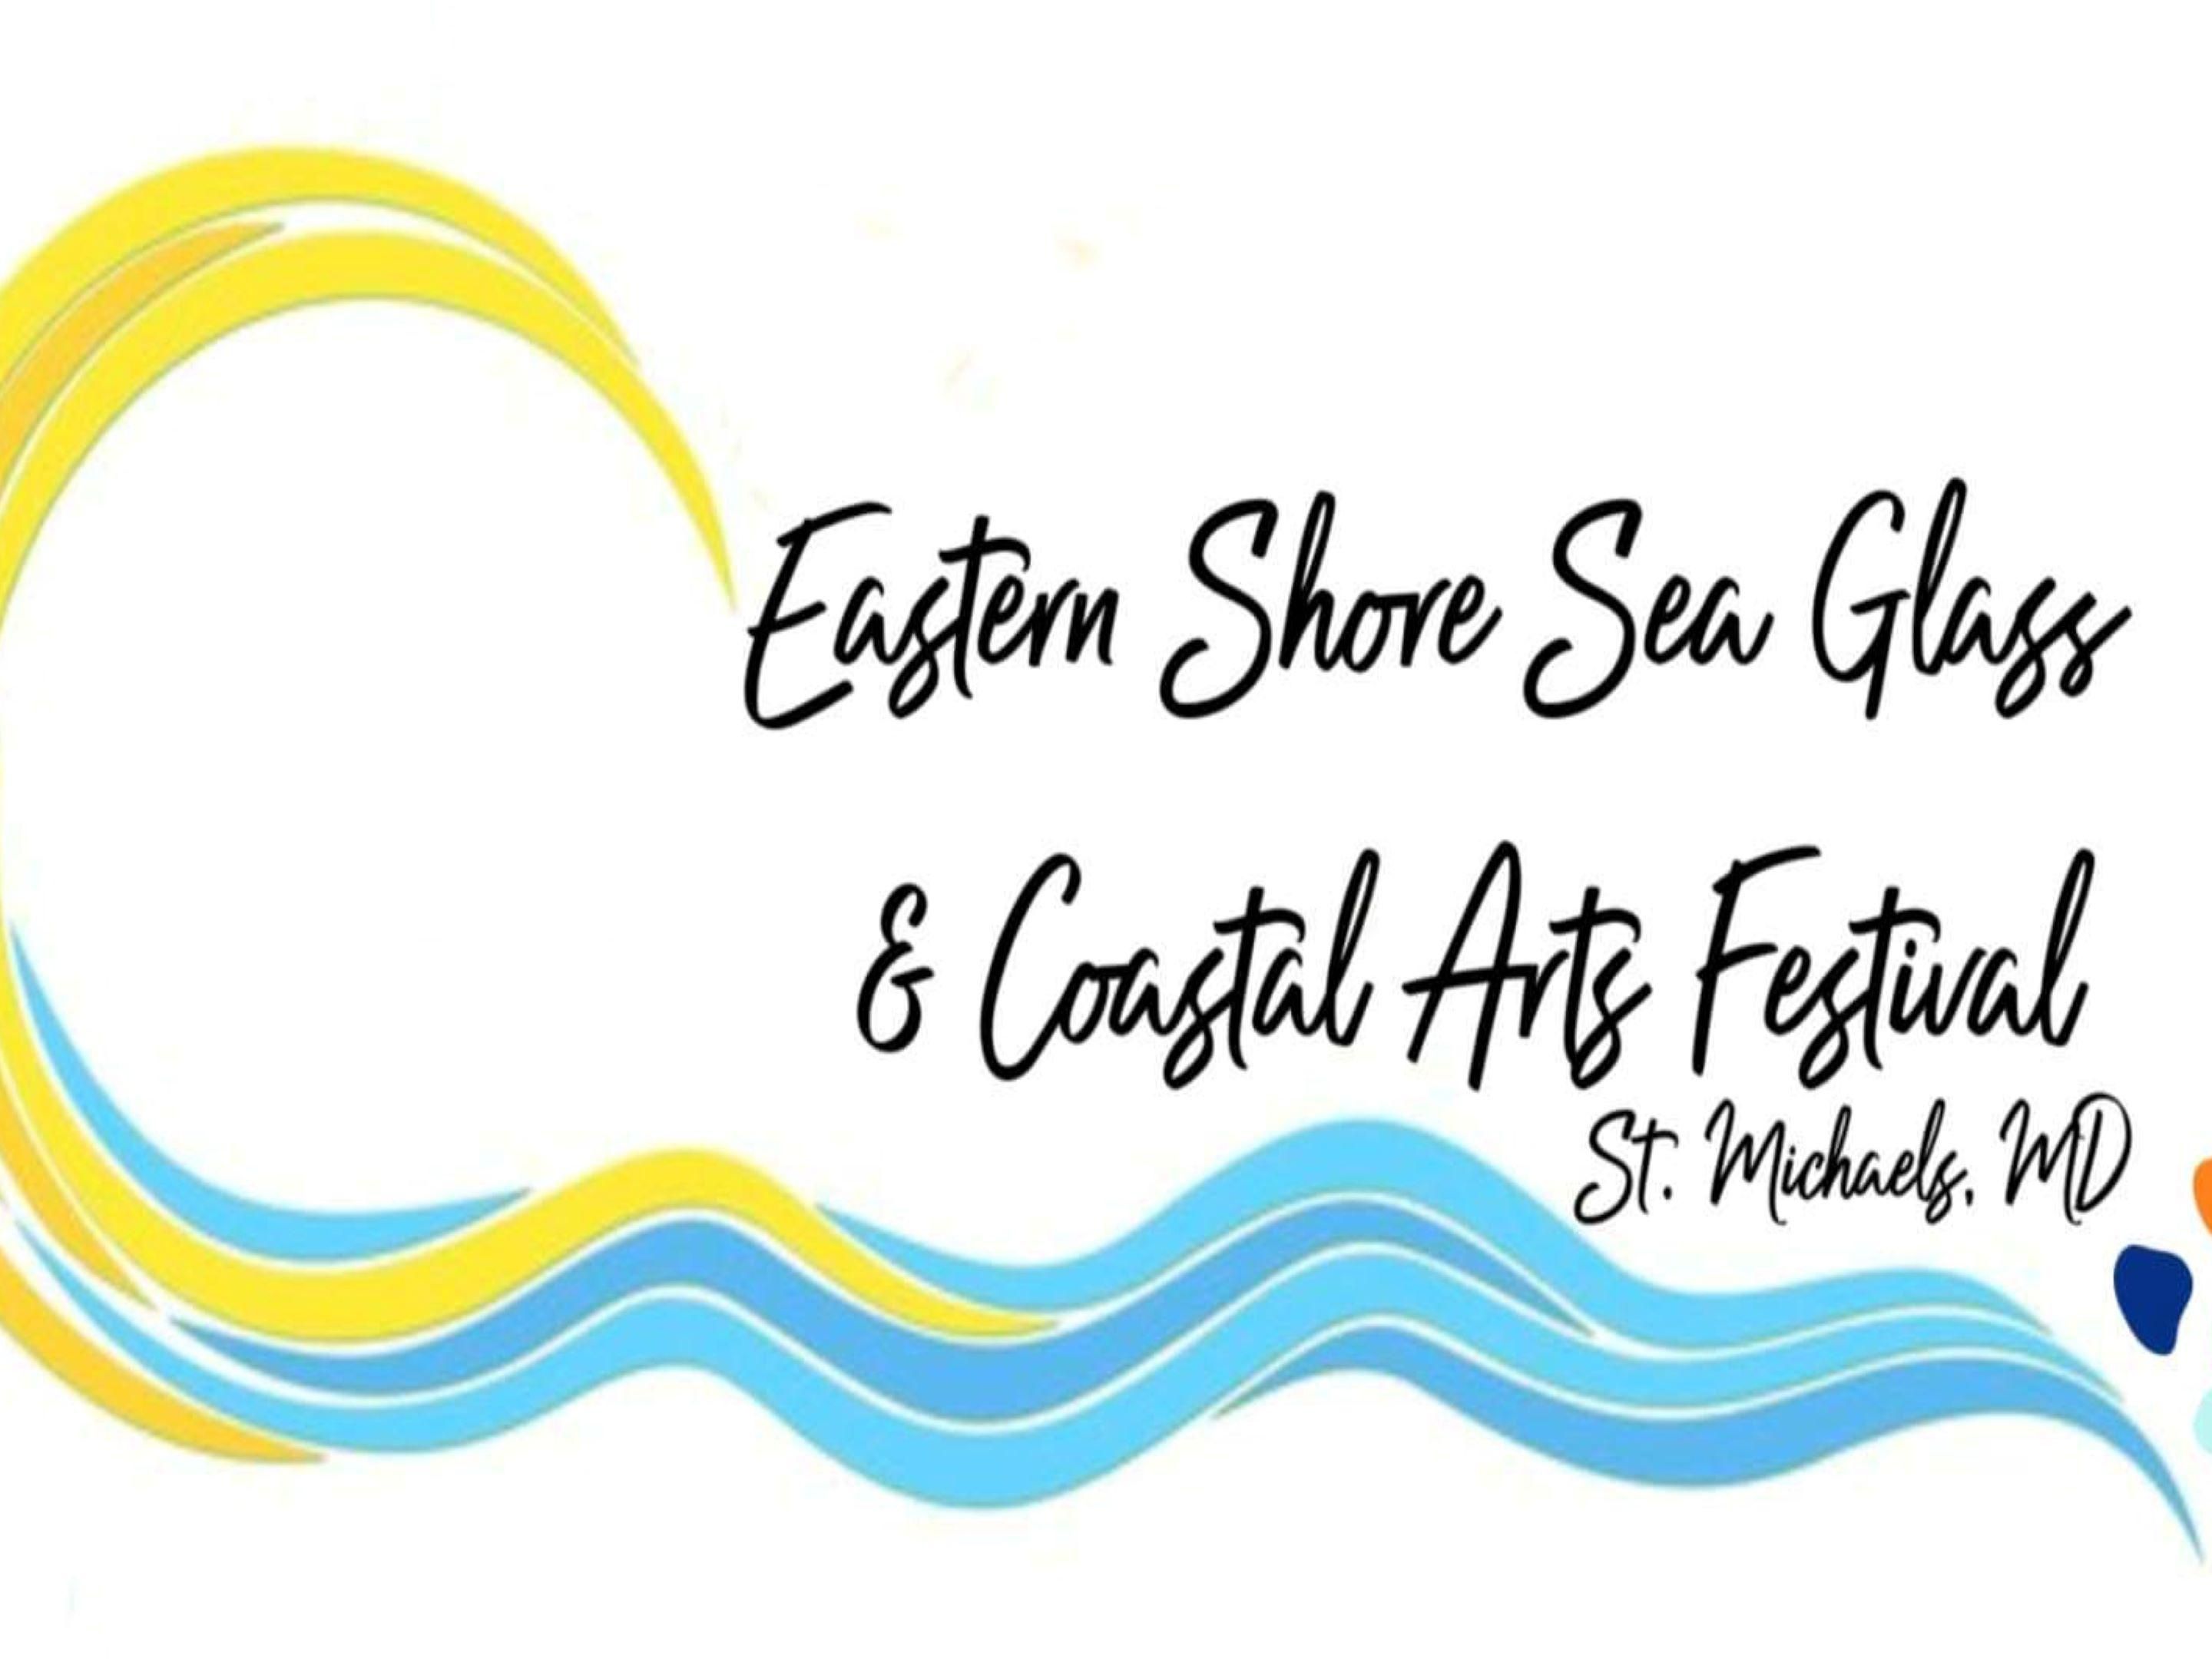 Sea Glass & Coastal Arts Festival